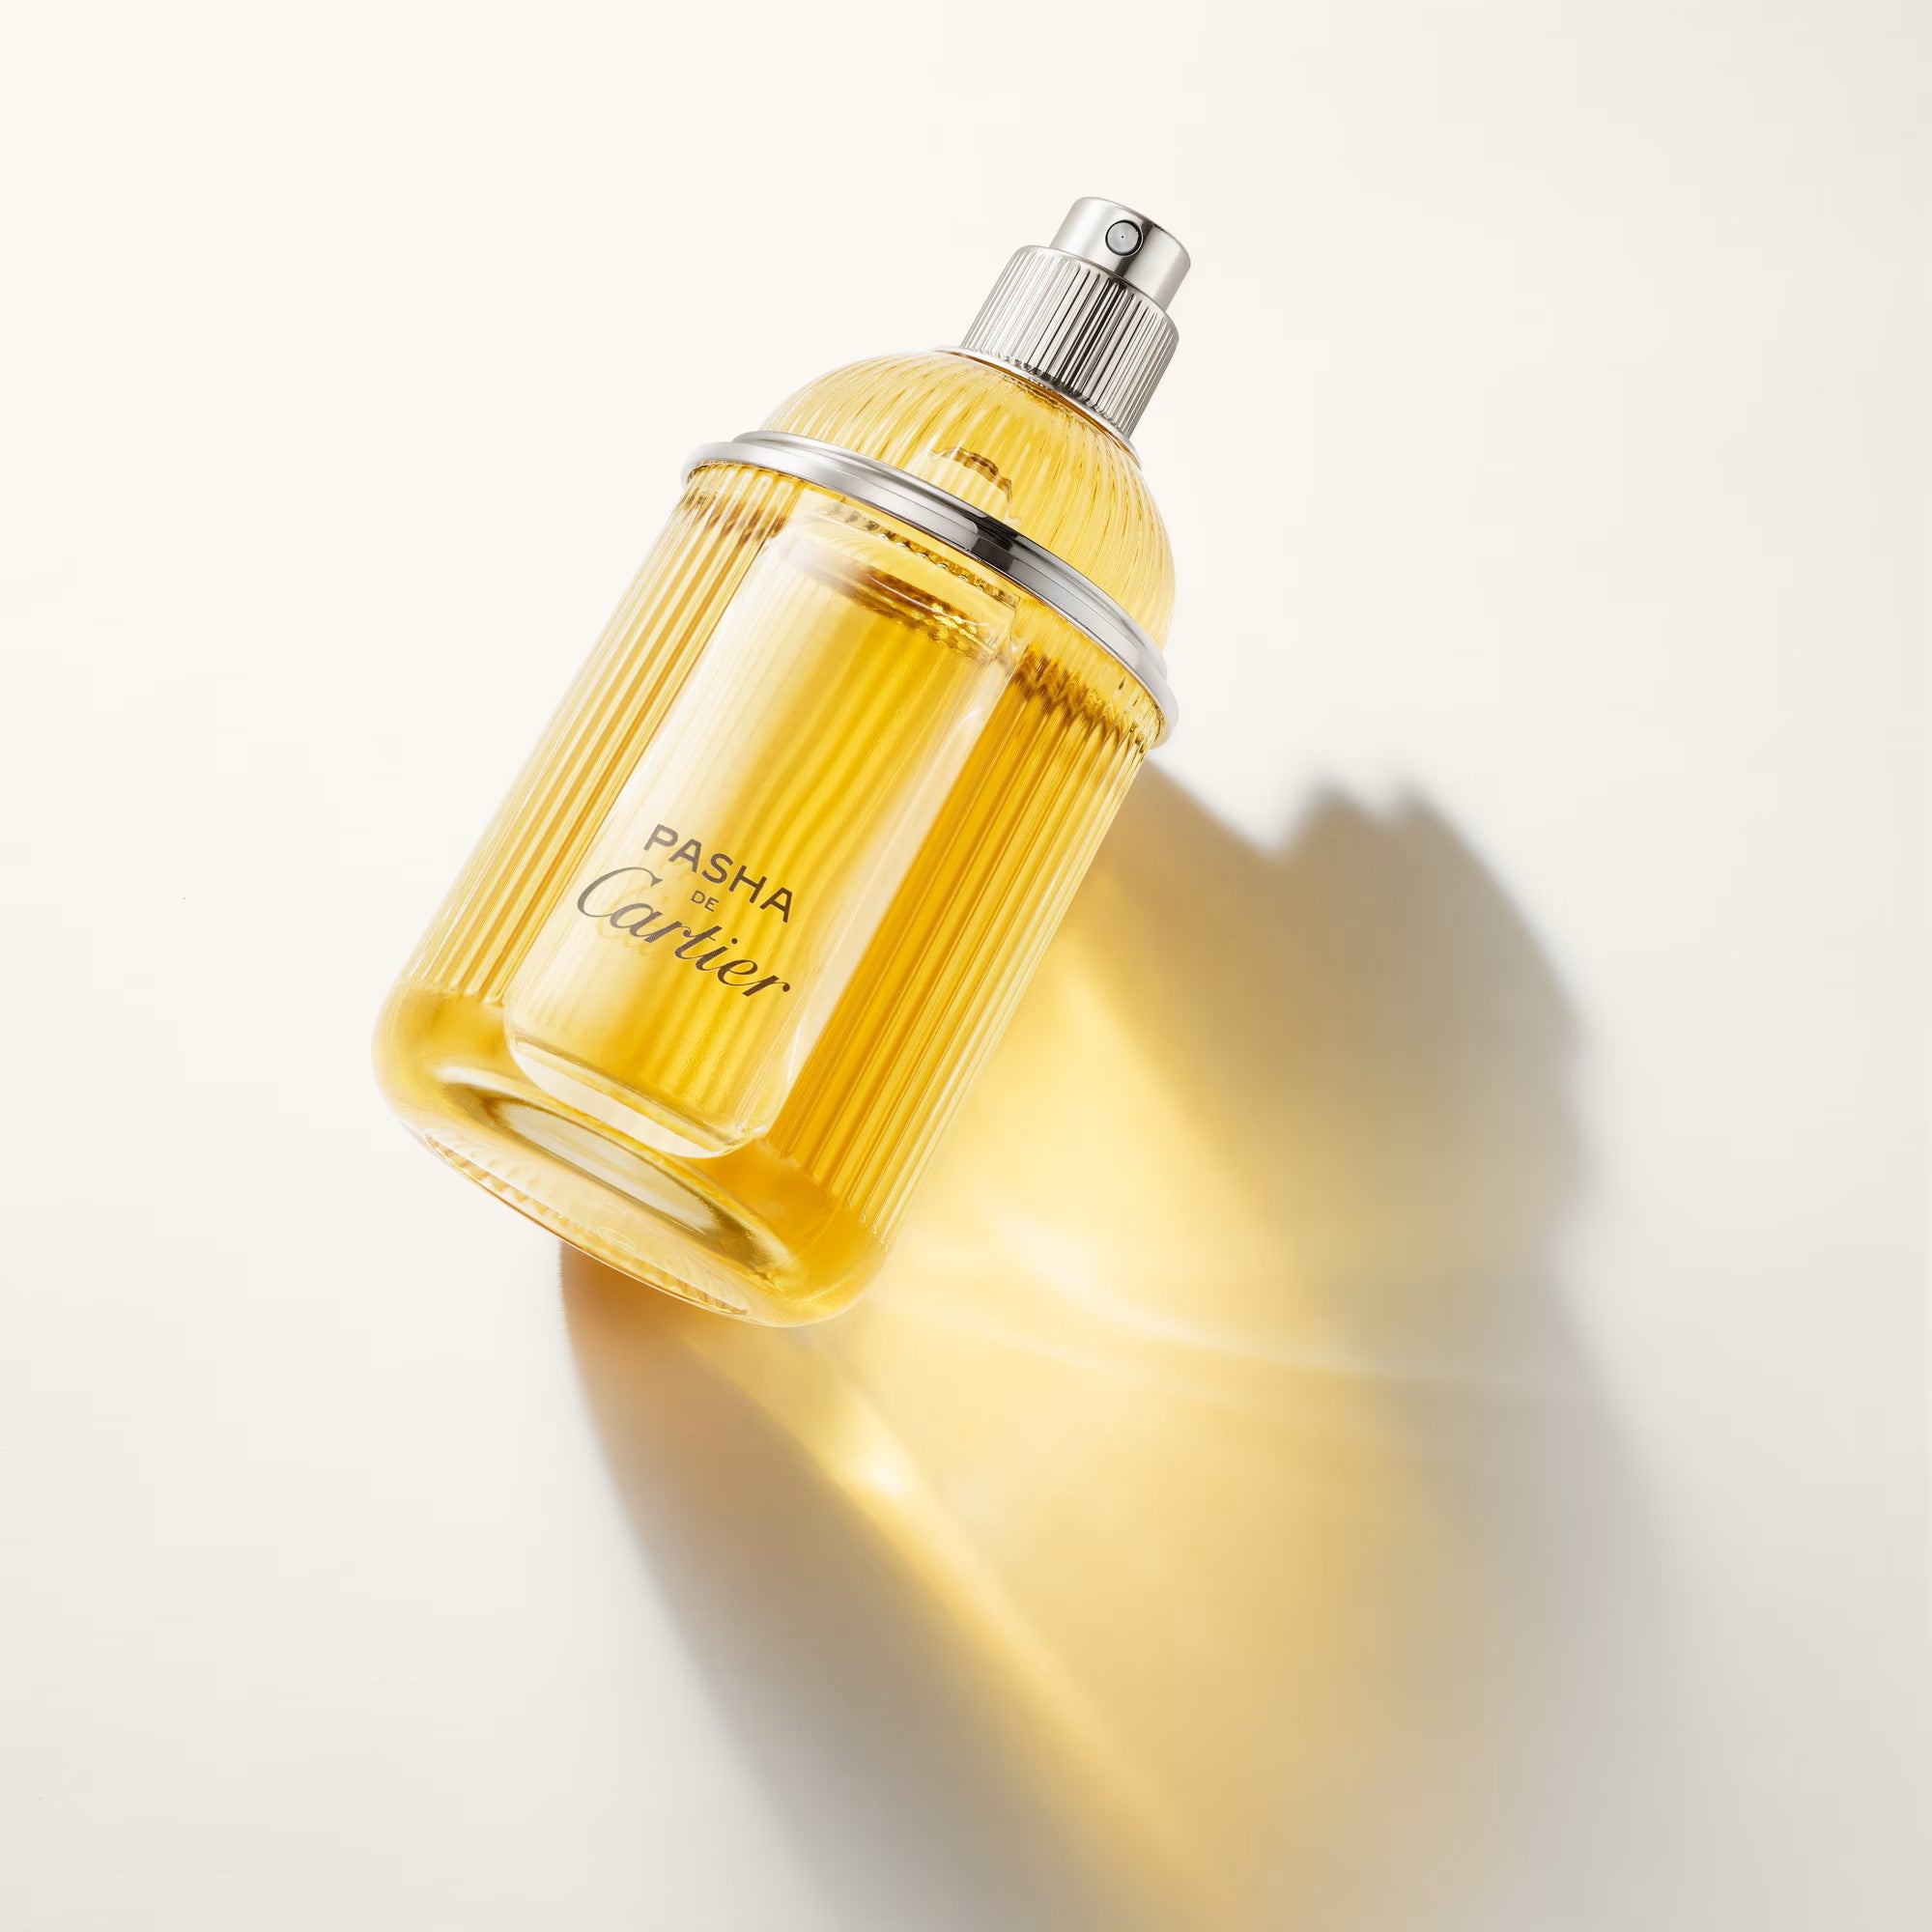 Nước Hoa CARTIER Pasha de Cartier Perfume #100 mL